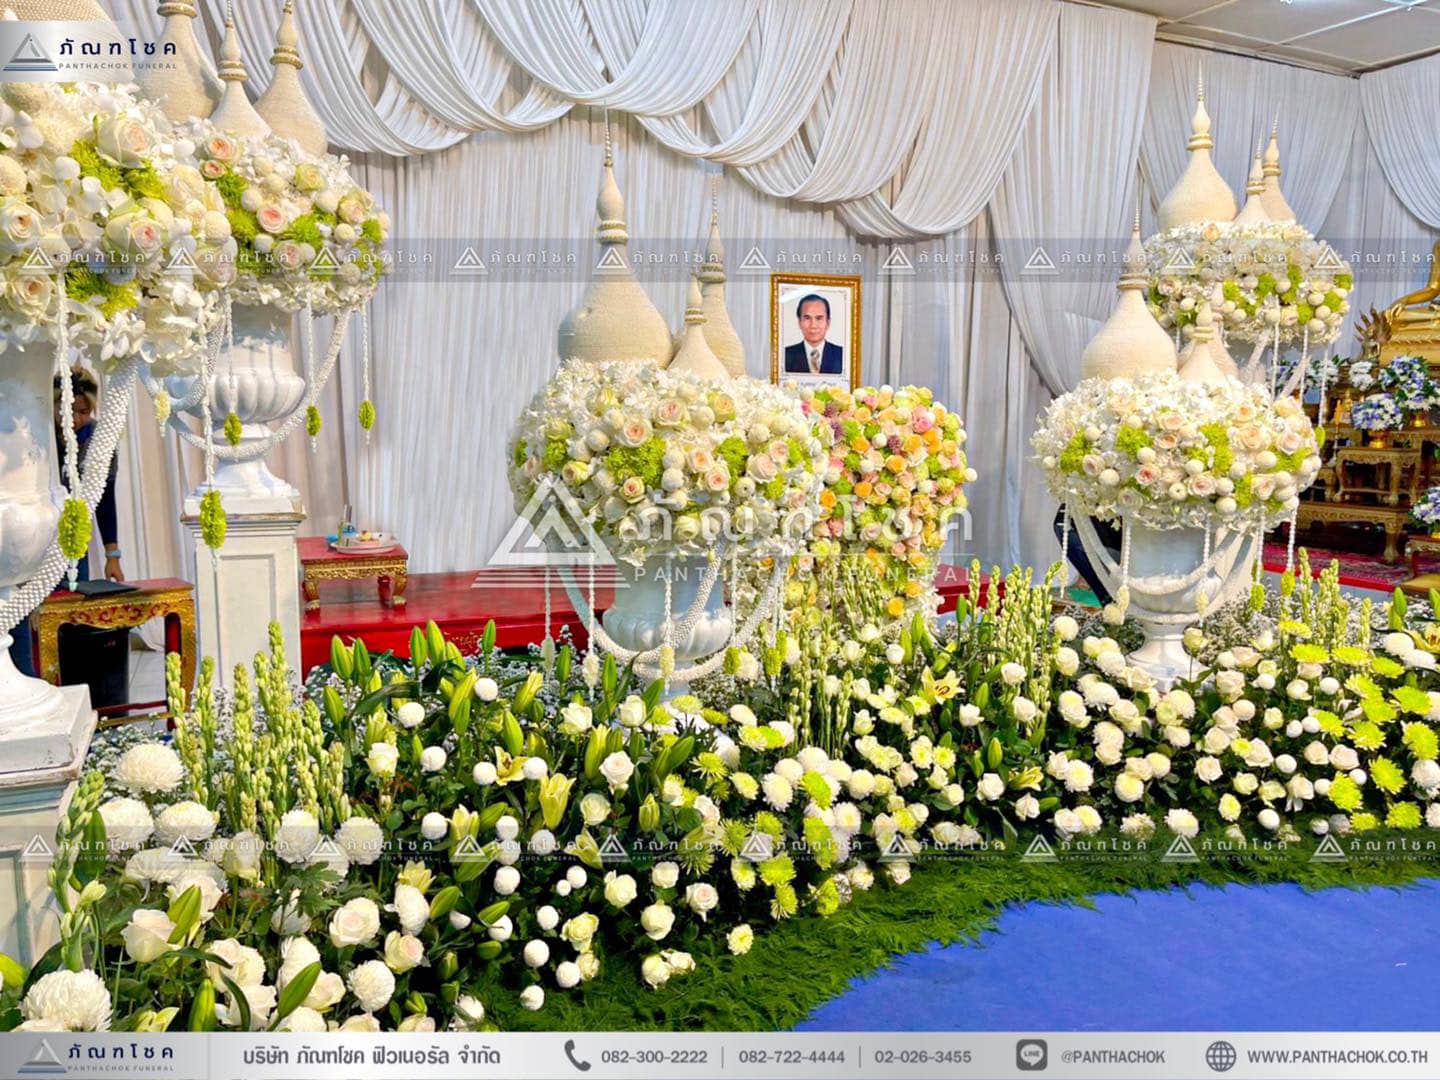 ดอกไม้หน้าศพไทยประยุกต์ สีขาวเขียว ดอกไม้งานศพสีขาว ดอกไม้หน้าศพสวยหรู ดอกไม้หน้าหีบสวยๆ จับจัดงานศพราชบุรี